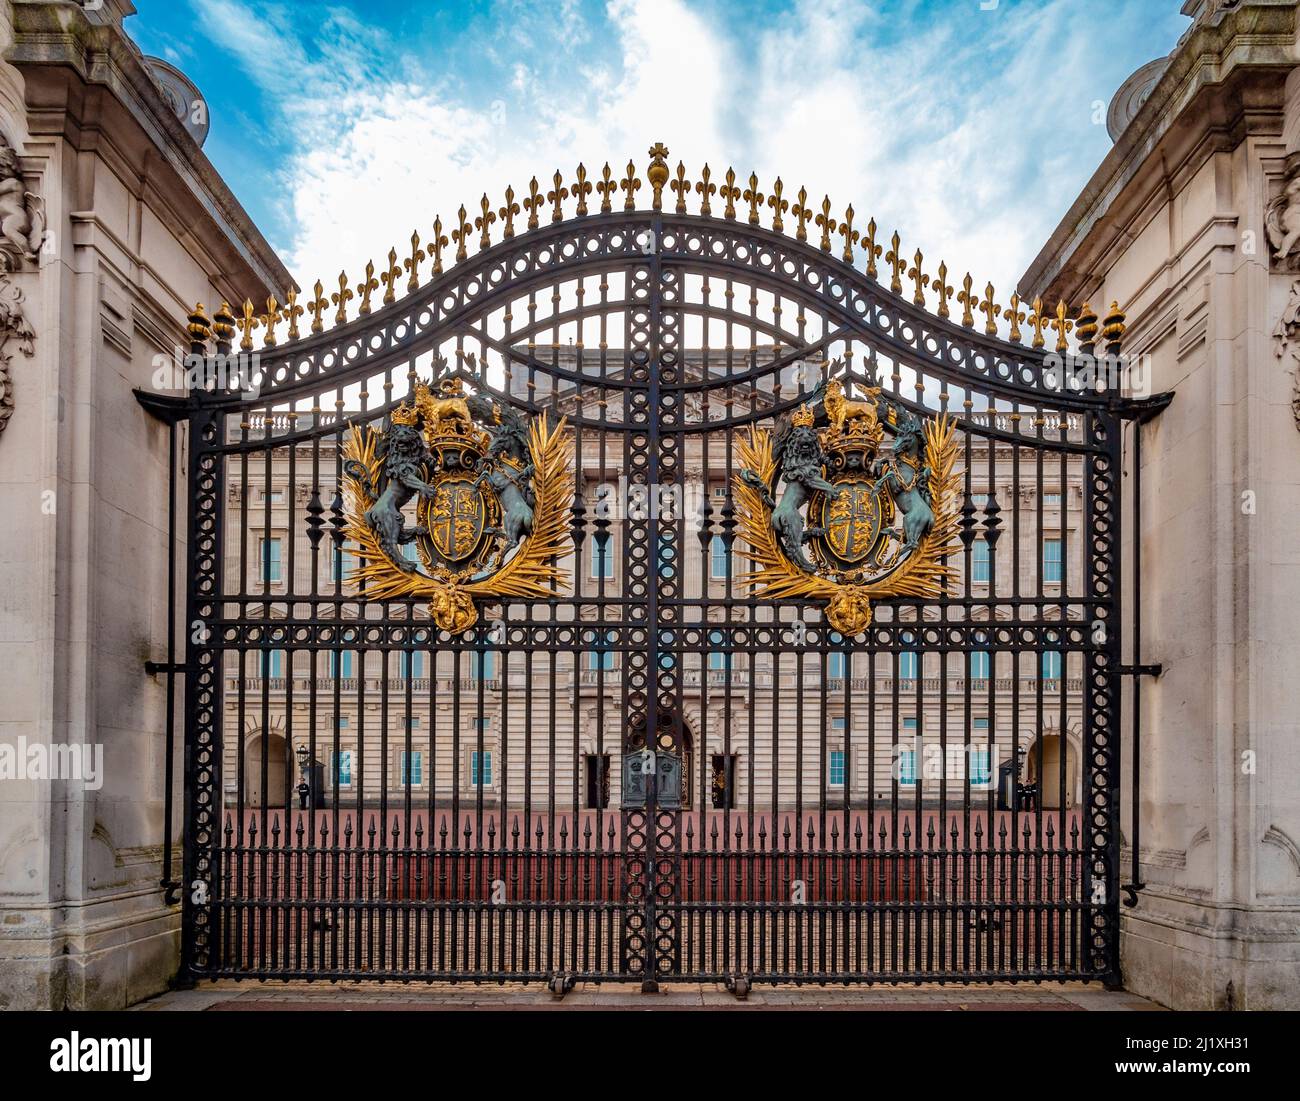 Ornate wrought iron gates at the entrance of Buckingham Palace. London. Stock Photo